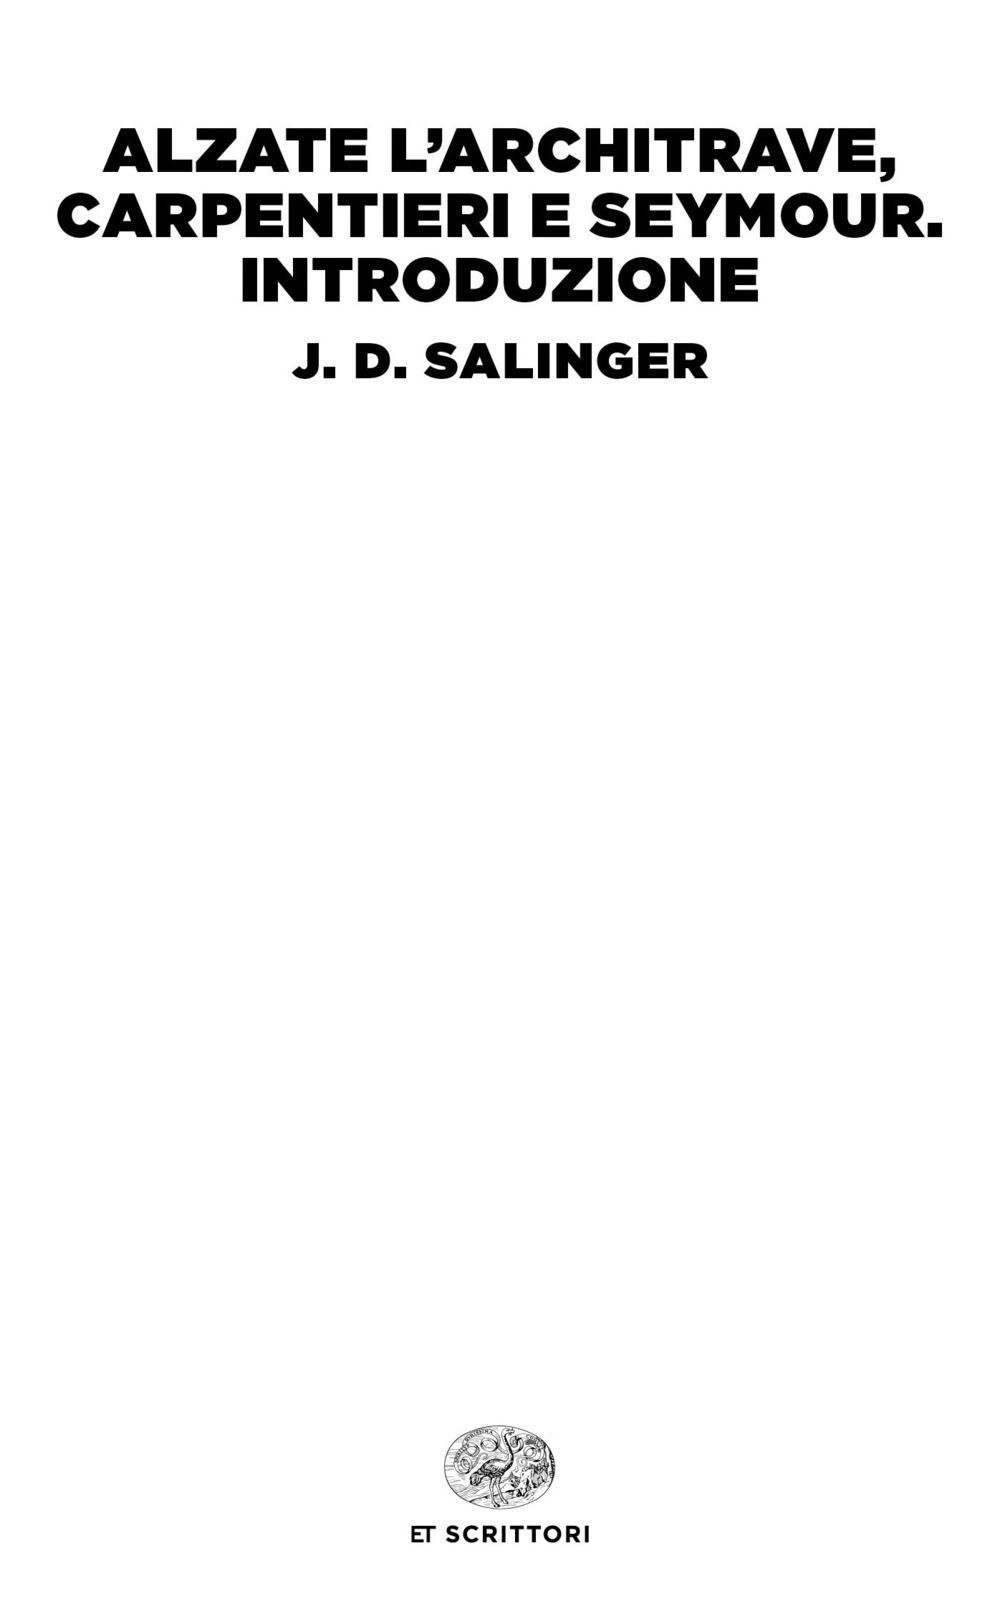 Alzate l'architrave, carpentieri-Seymour. Introduzione - J. D. Salinger - Einaudi